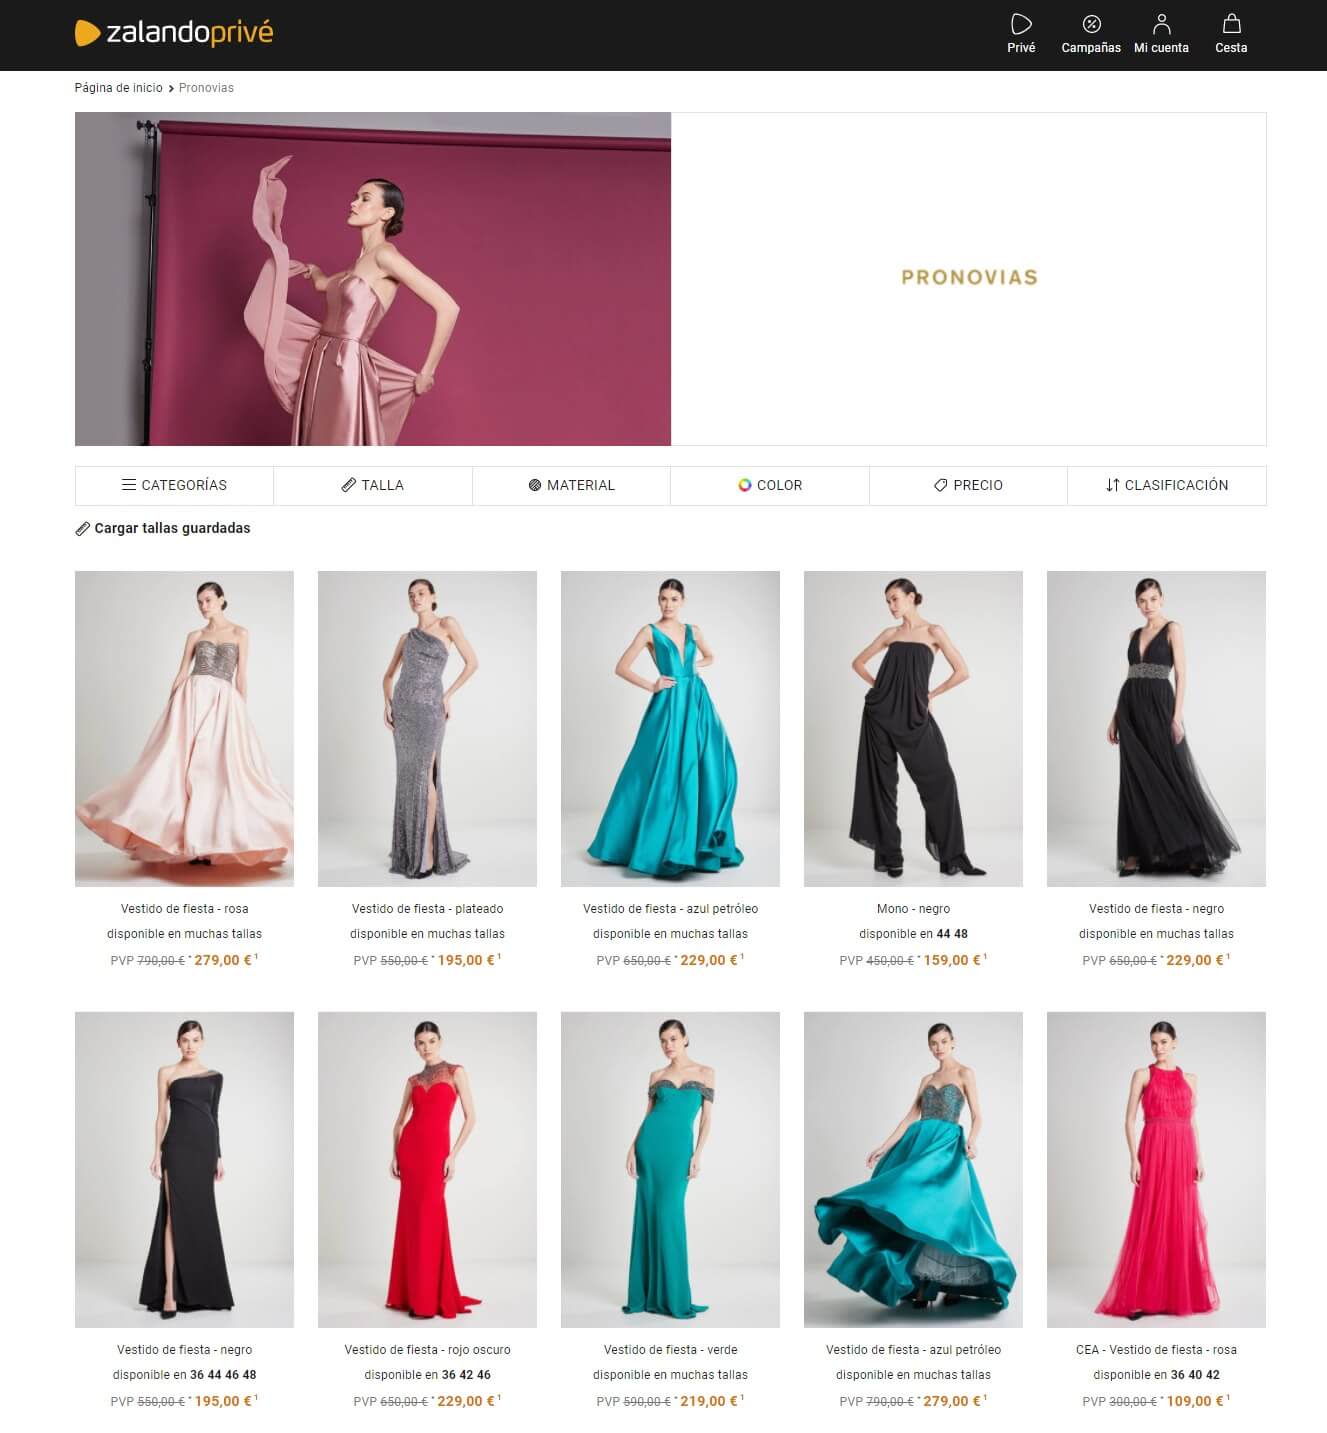 Vestidos Pronovias a precios outlet | Zalando Privé